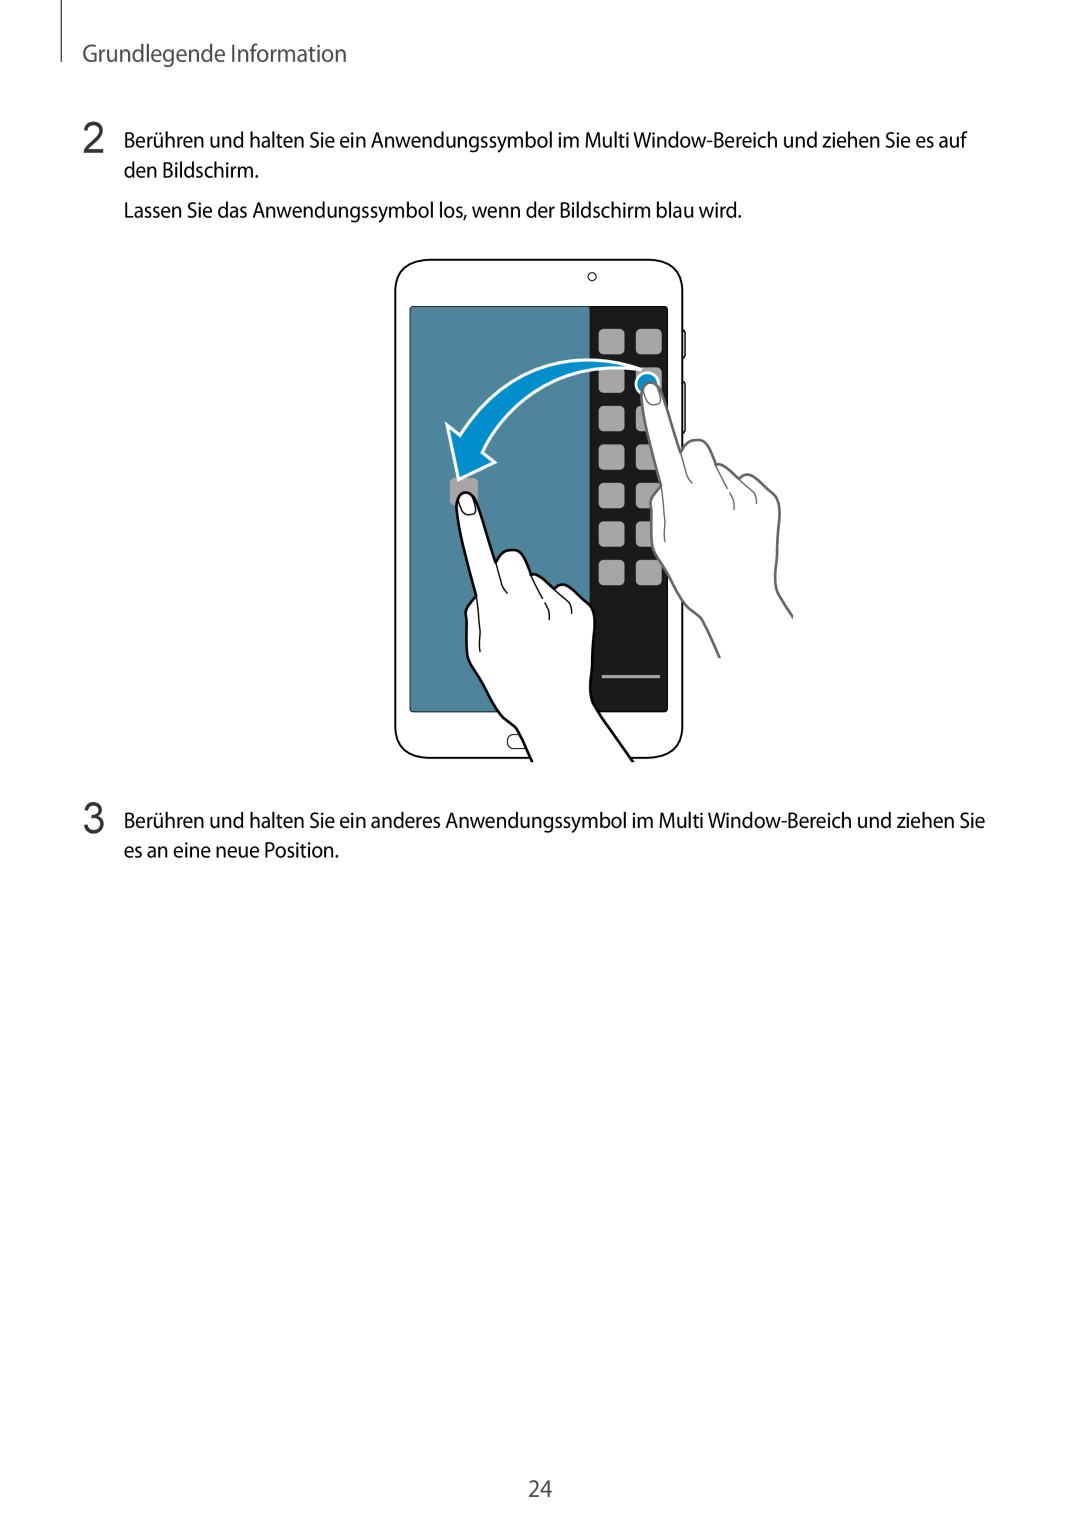 Samsung SM-T3100ZWADBT manual Grundlegende Information, Lassen Sie das Anwendungssymbol los, wenn der Bildschirm blau wird 